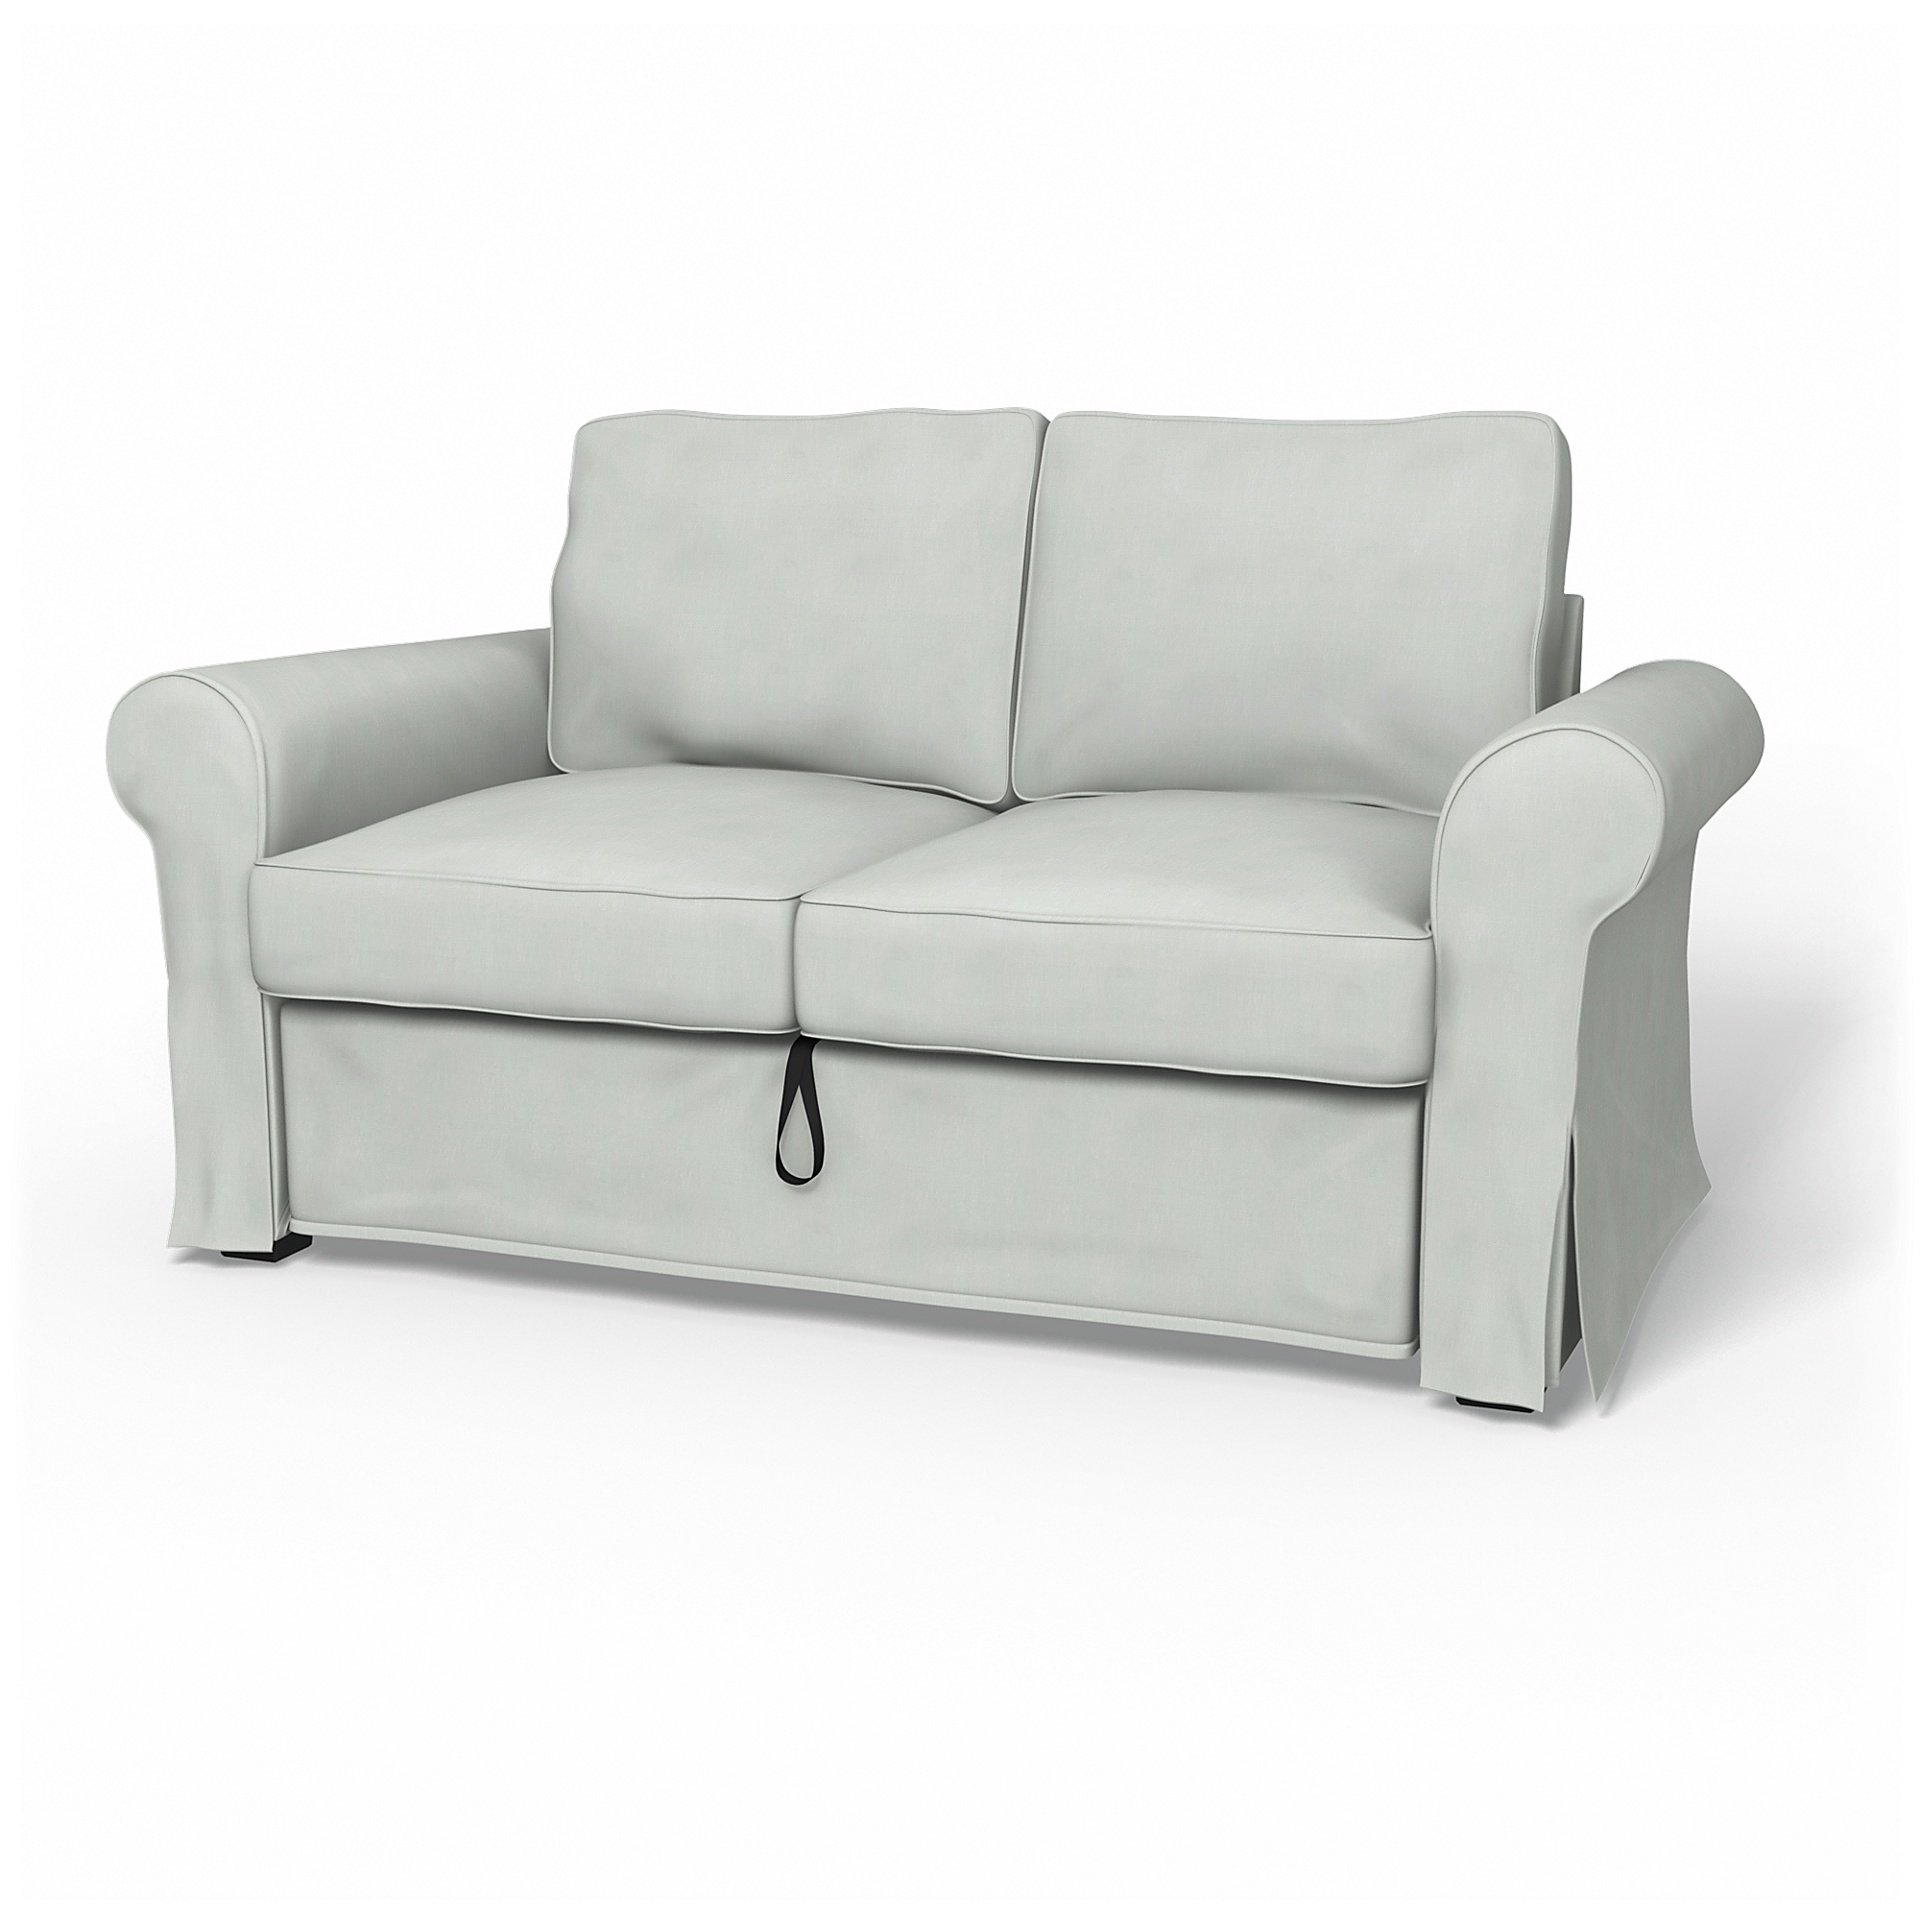 IKEA - Backabro 2 Seater Sofa Bed Cover, Silver Grey, Linen - Bemz